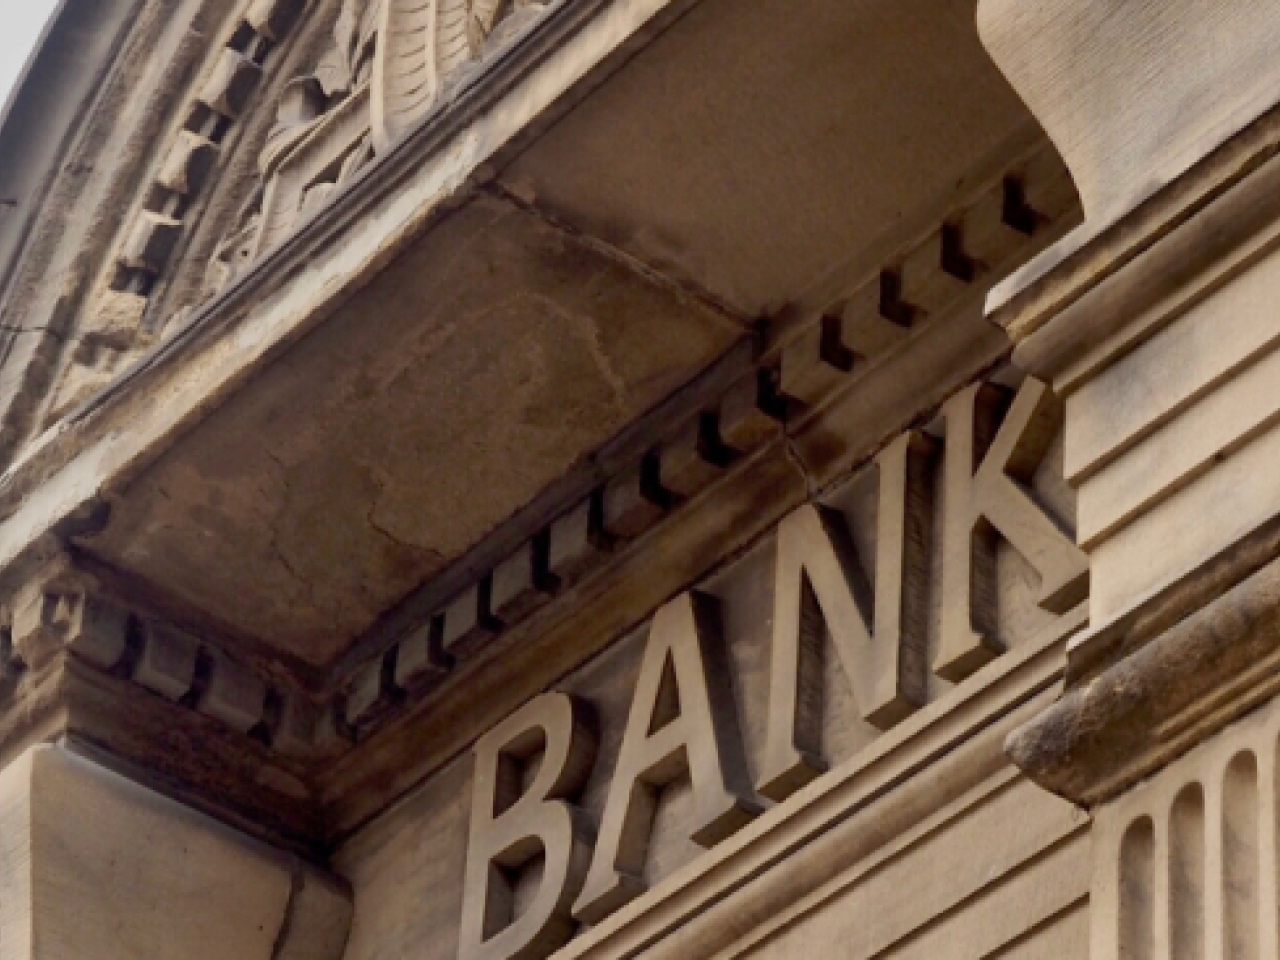 Bank facade